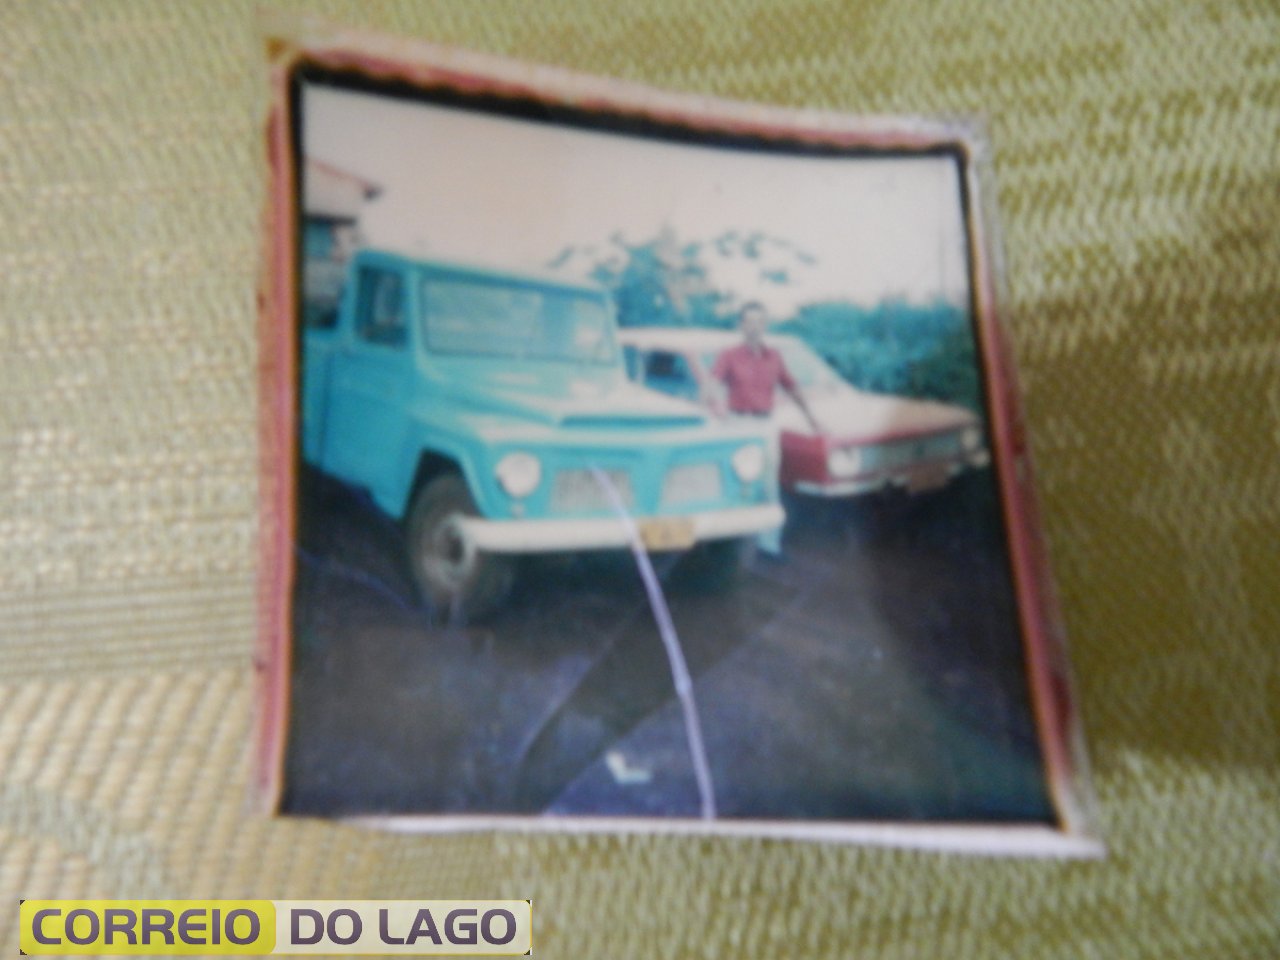 Carros de Marcelino José Galvão. Vera Cruz do Oeste. Década de 1980.